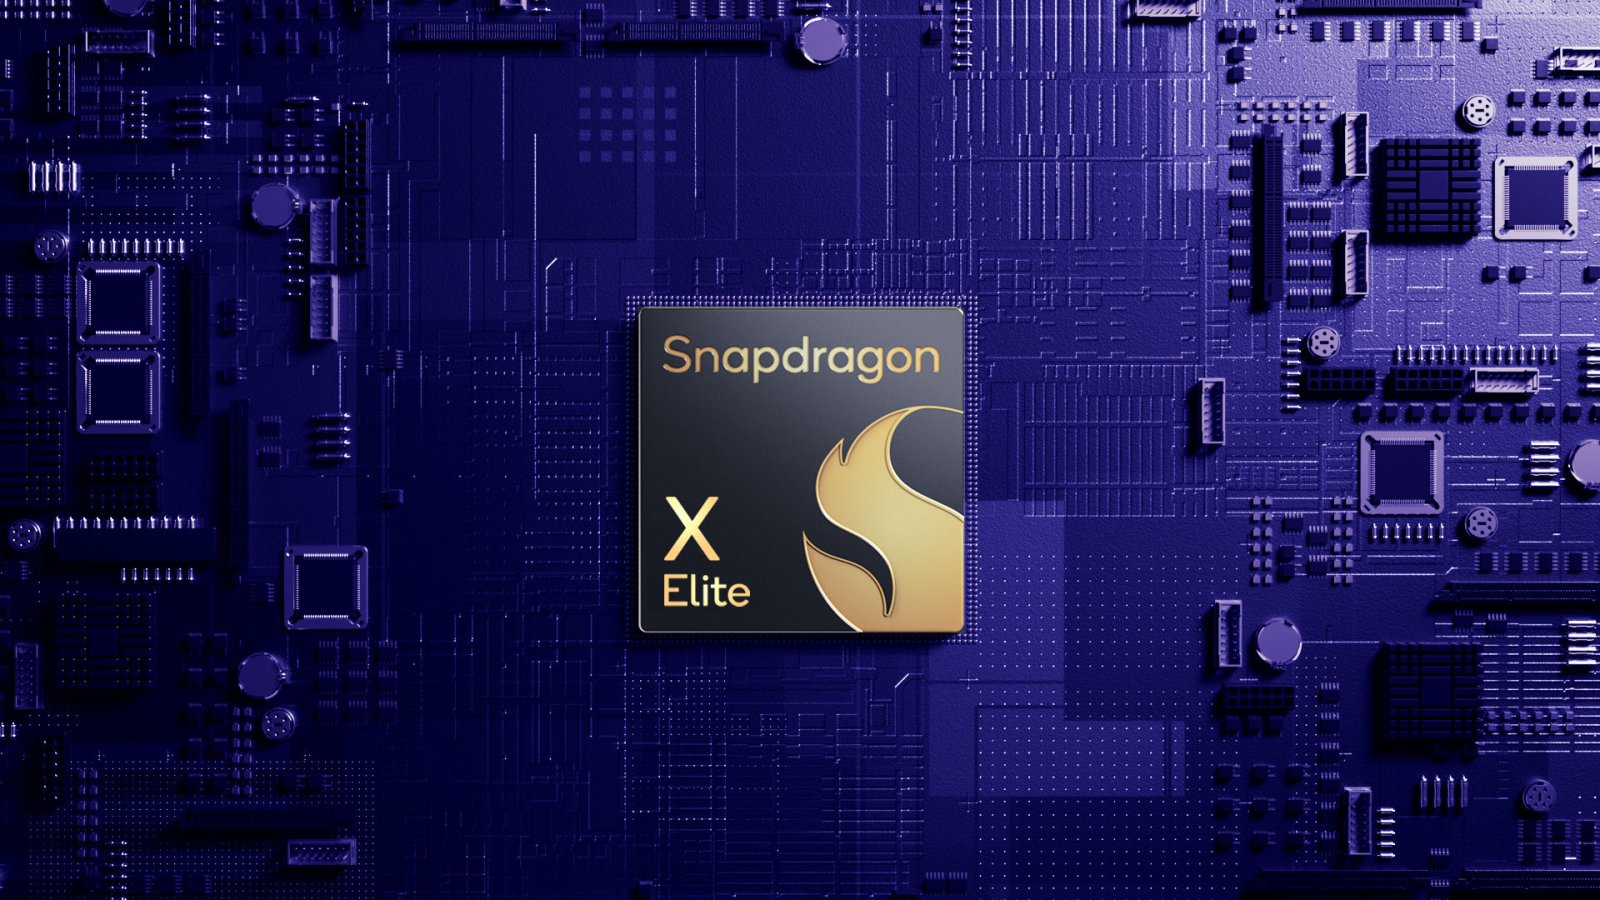 Snapdragon X Elite è il 50% più veloce delle migliori CPU Intel, parola di Qualcomm